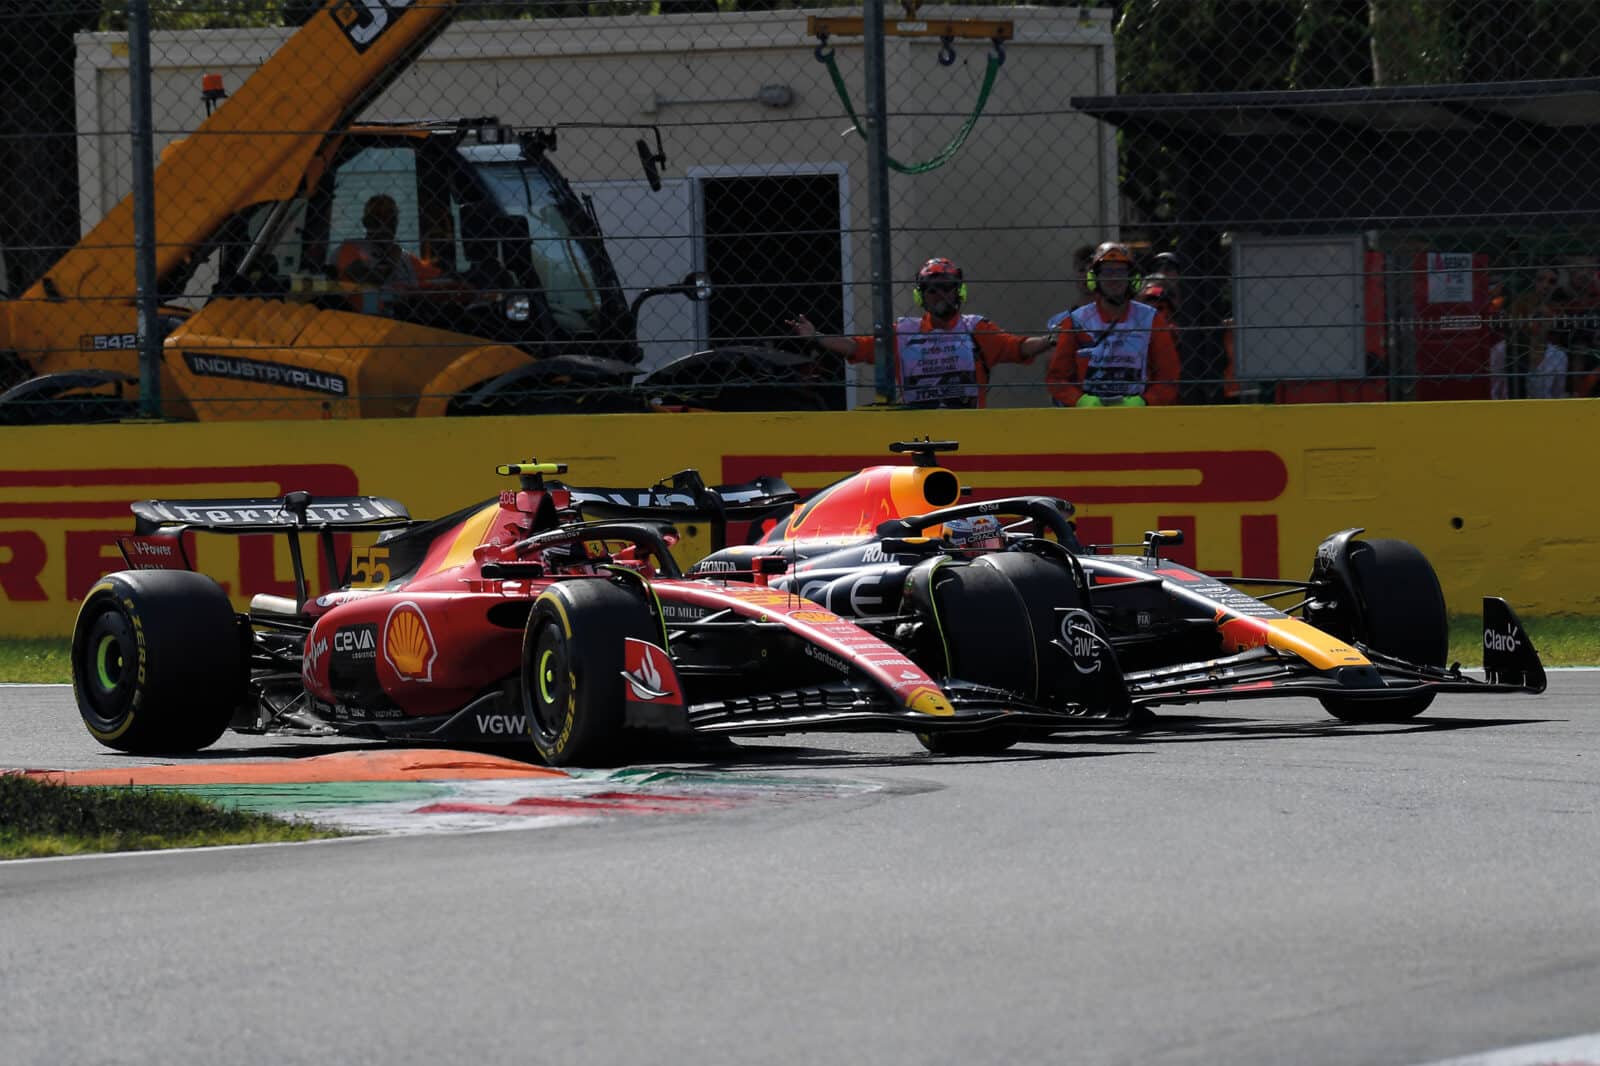 Sainz held v Max Verstappen at Monza